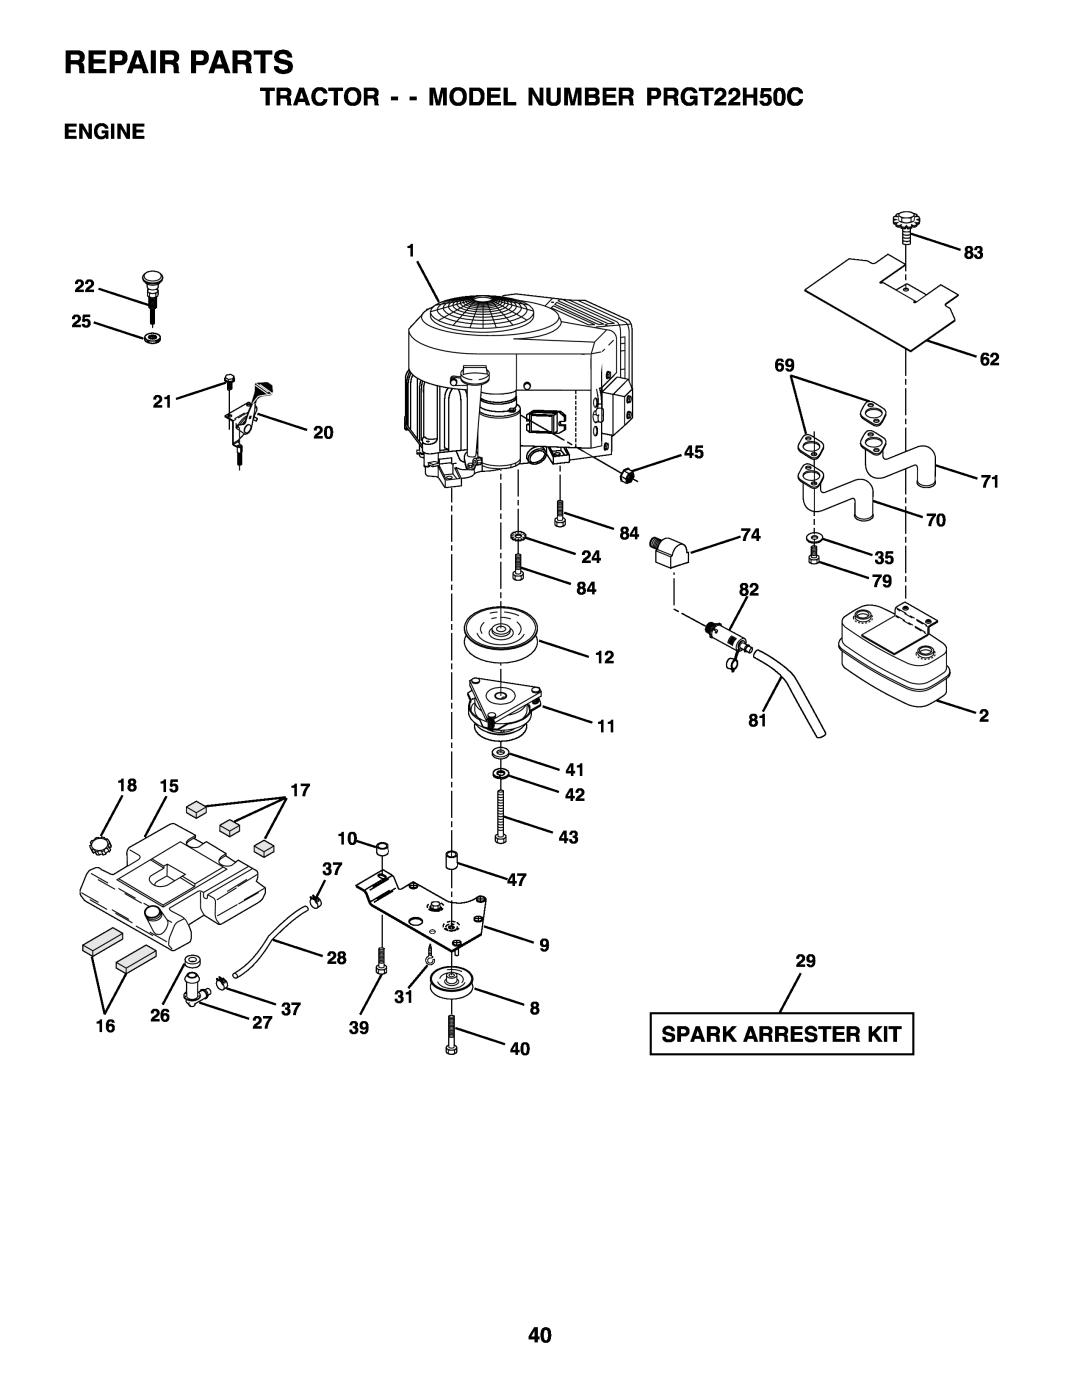 Poulan owner manual Repair Parts, TRACTOR - - MODEL NUMBER PRGT22H50C, Engine, Spark Arrester Kit, 6962 